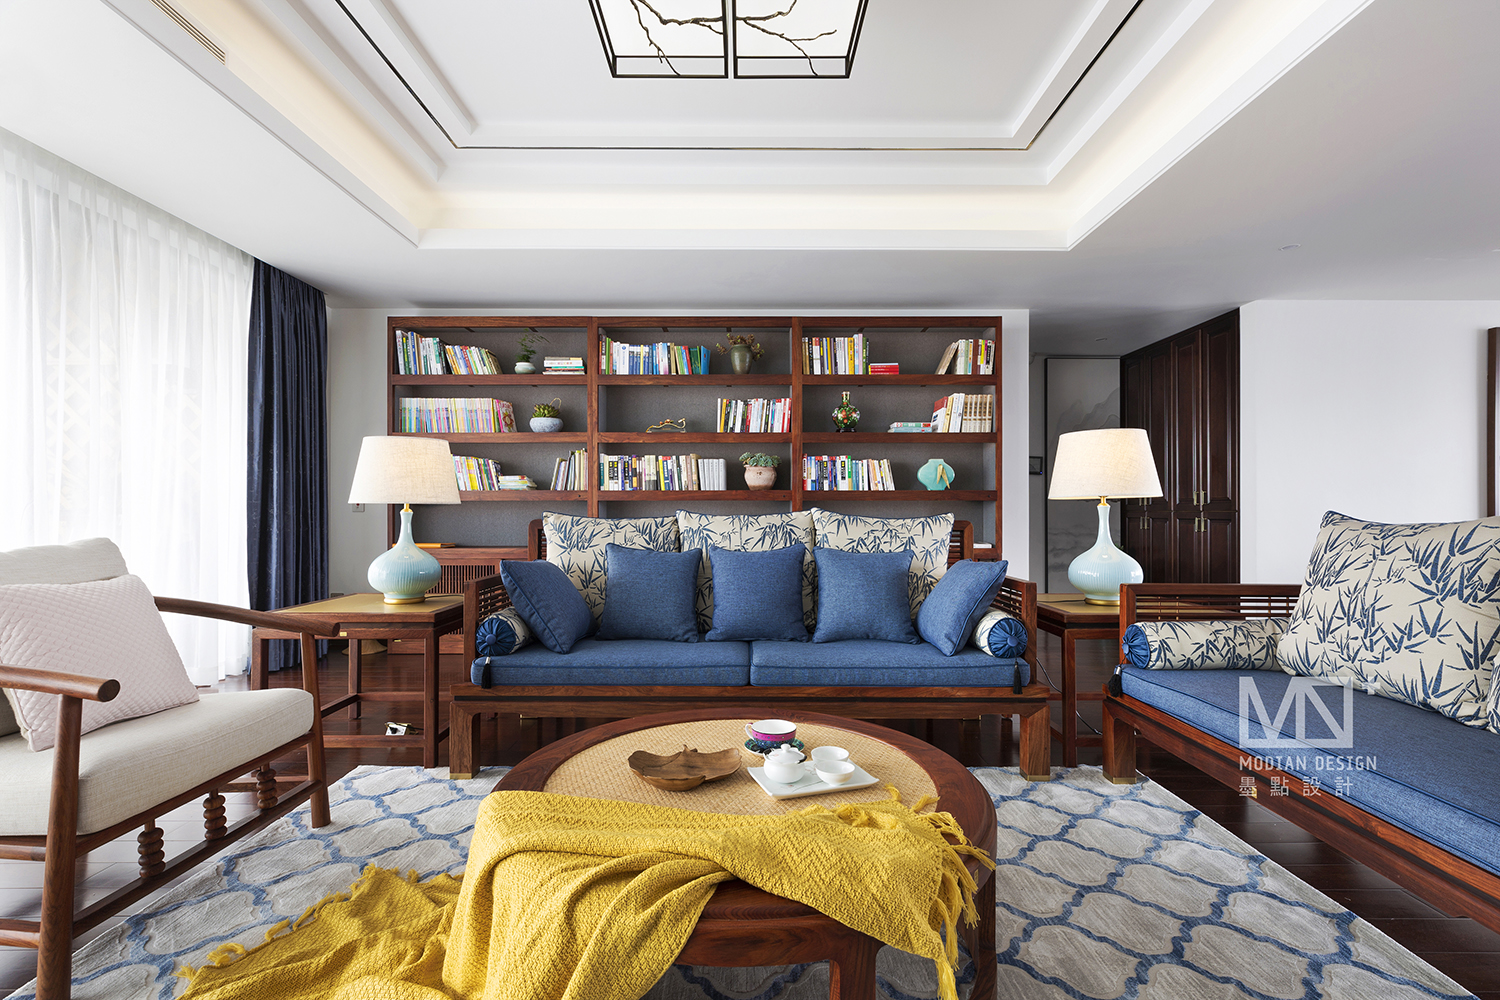 窗帘装修效果图锦绣中式客厅沙发图片新中式设计图片赏析